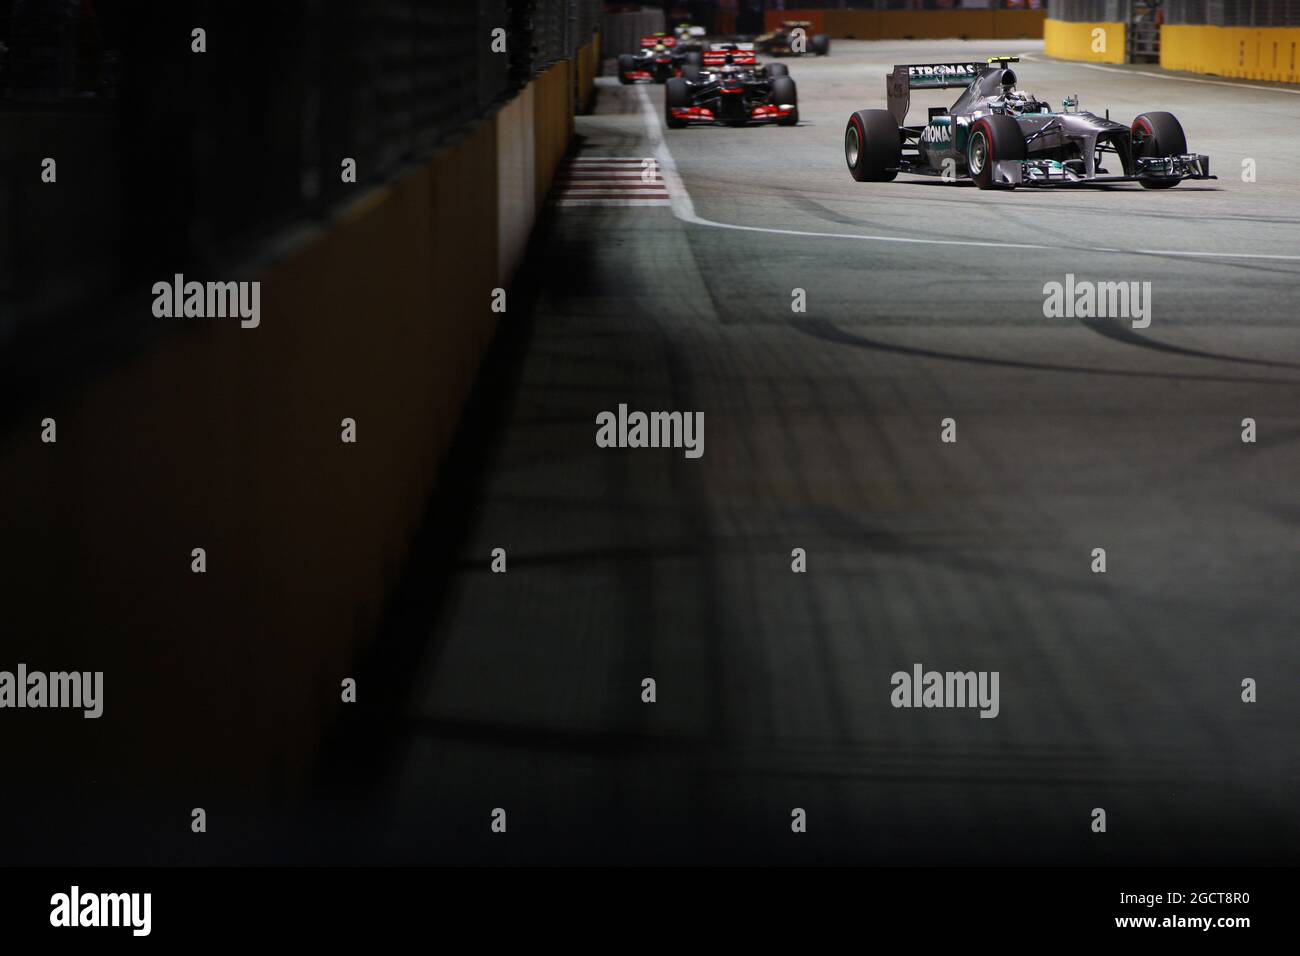 Lewis Hamilton (GBR) Mercedes AMG F1 W04. Gran Premio di Singapore, domenica 22 settembre 2013. Circuito Marina Bay Street, Singapore. Foto Stock